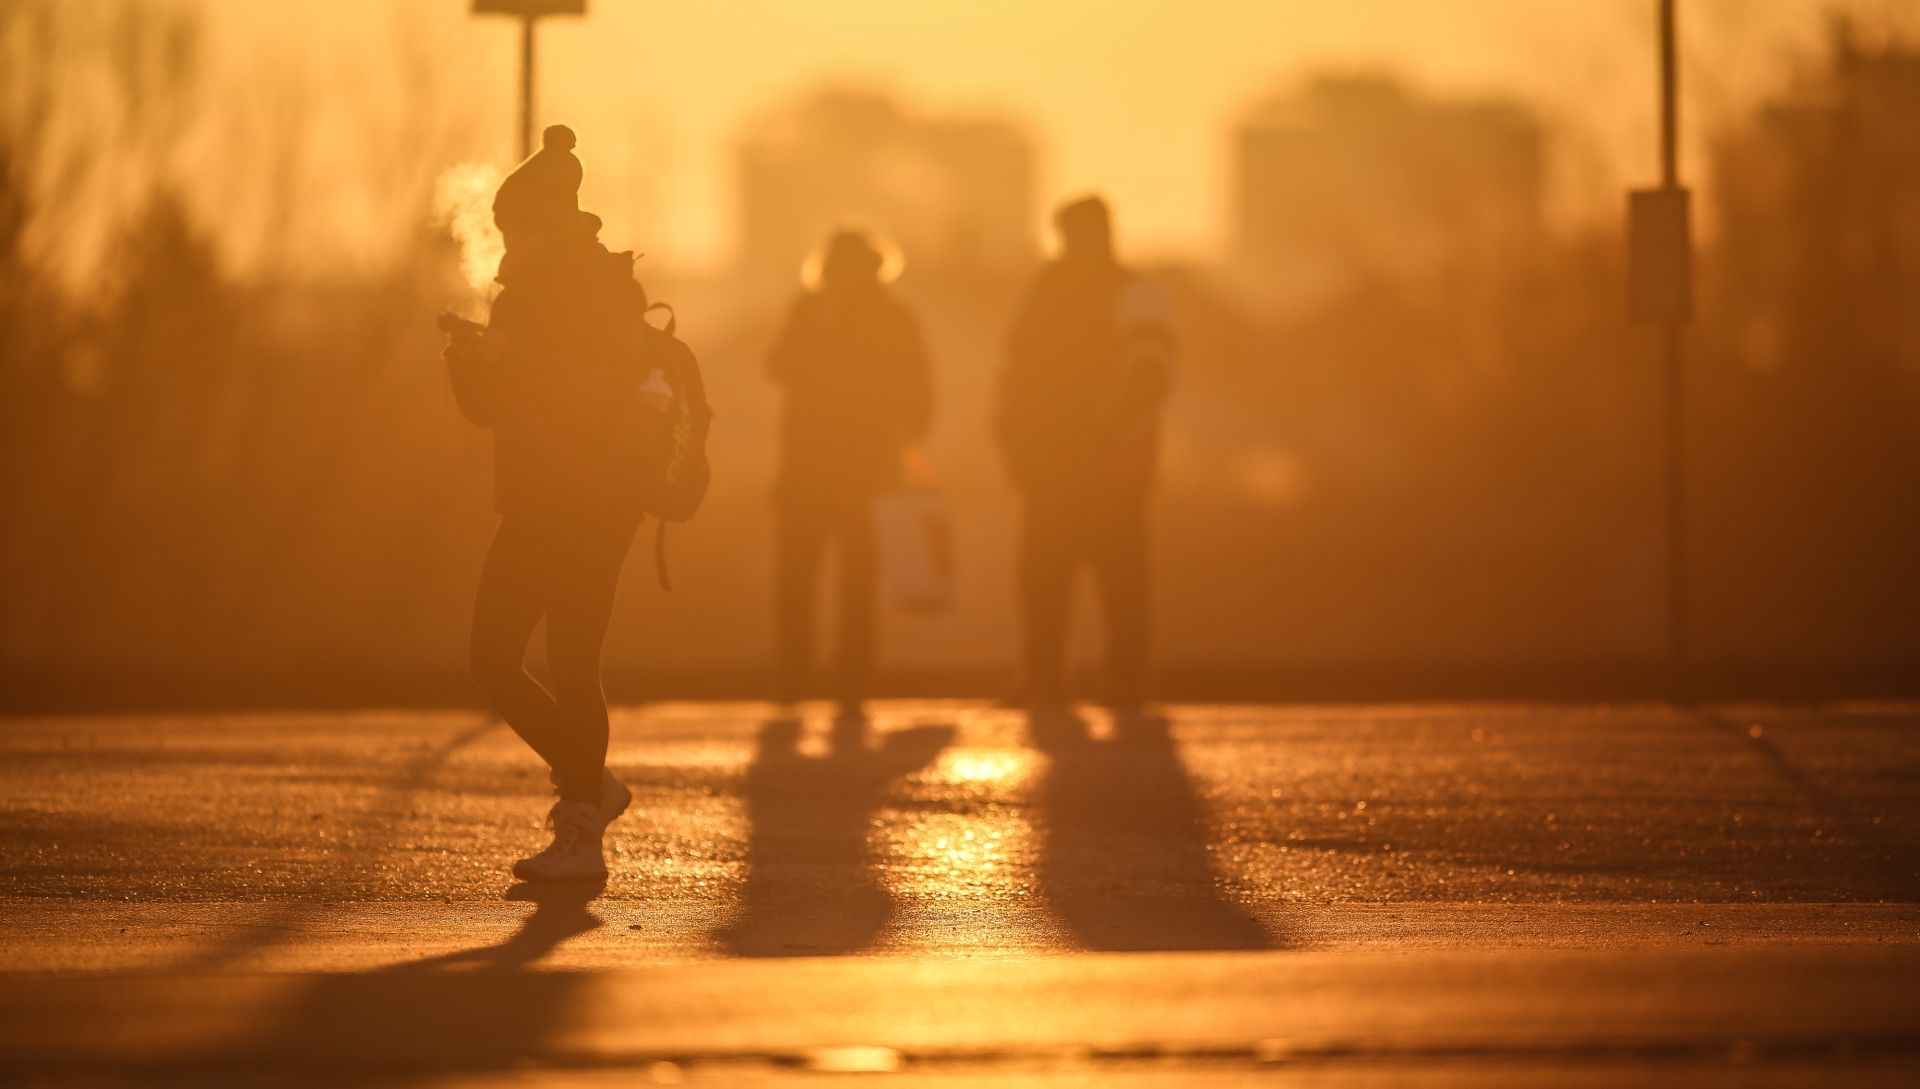 07.01.2017., Zagreb - 11 stupnjeva ispod nule i suncano jutro docekalo je Zagrepcane koji su rano jutros kretali na posao. Photo: Igor Soban/PIXSELL